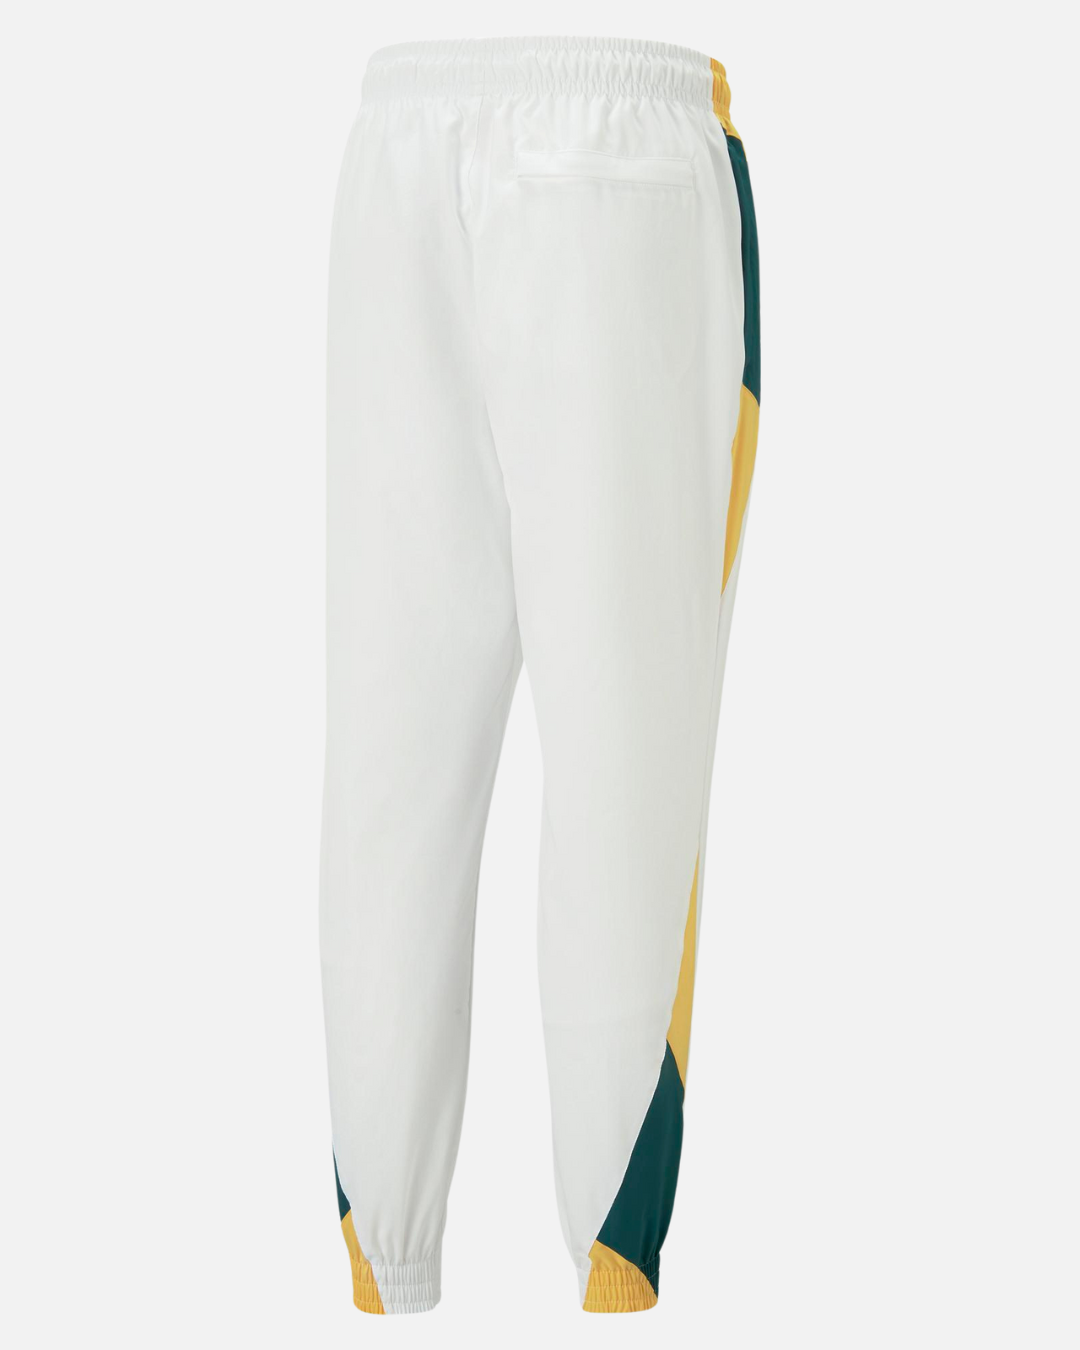 Pantaloni da allenamento Senegal 2022/2023 - Bianco/Verde/Giallo